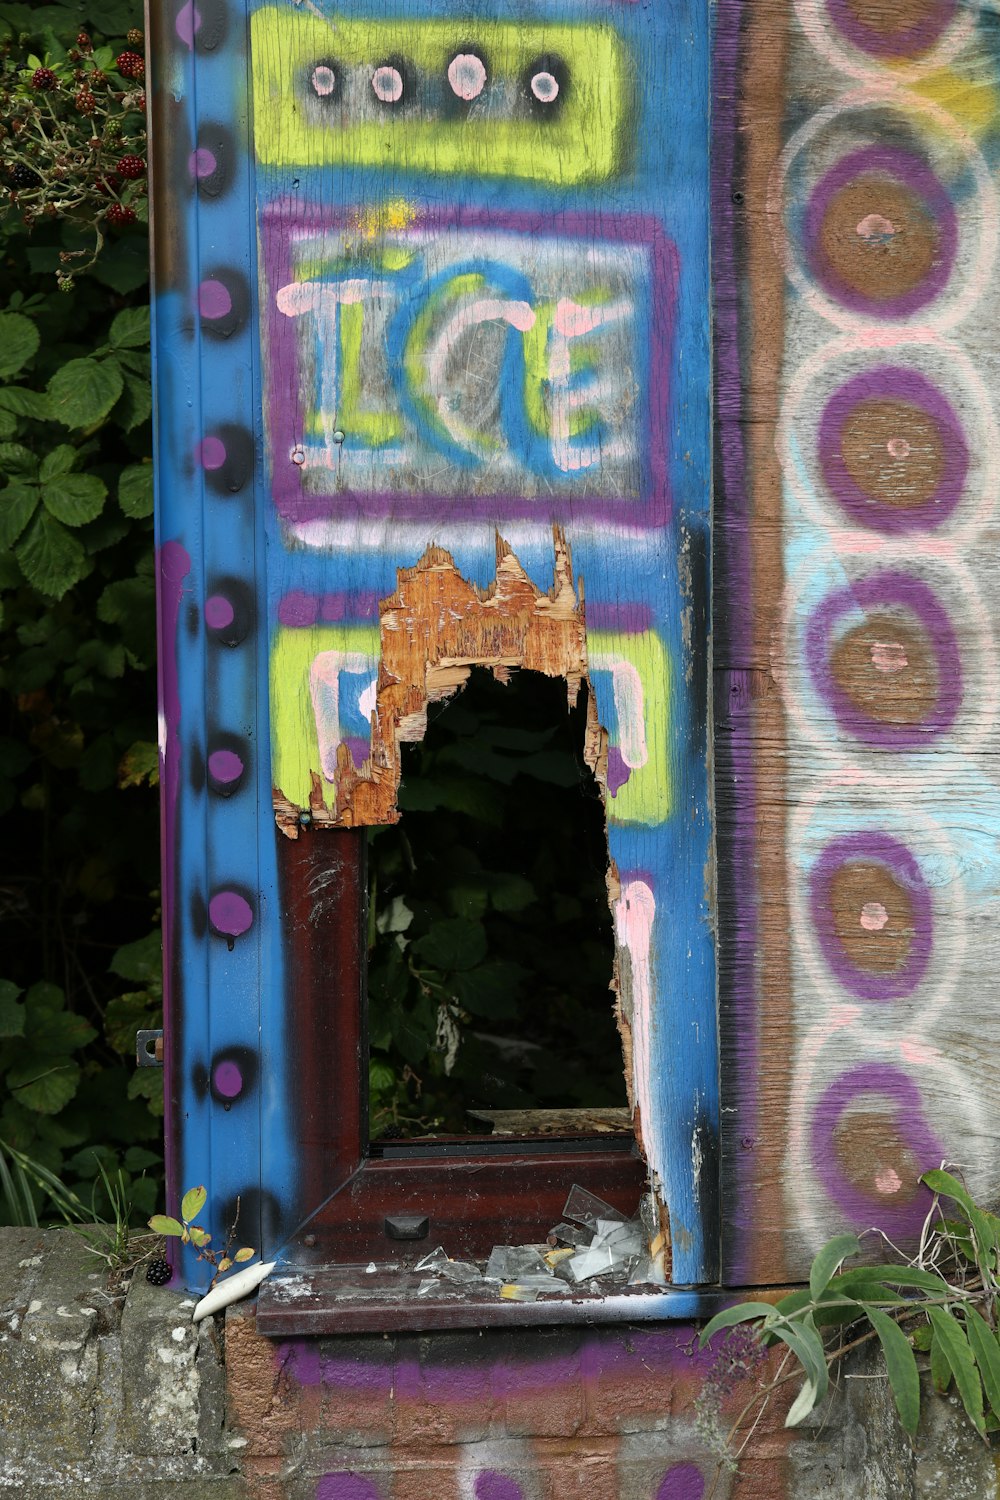 Una caja colorida con graffiti